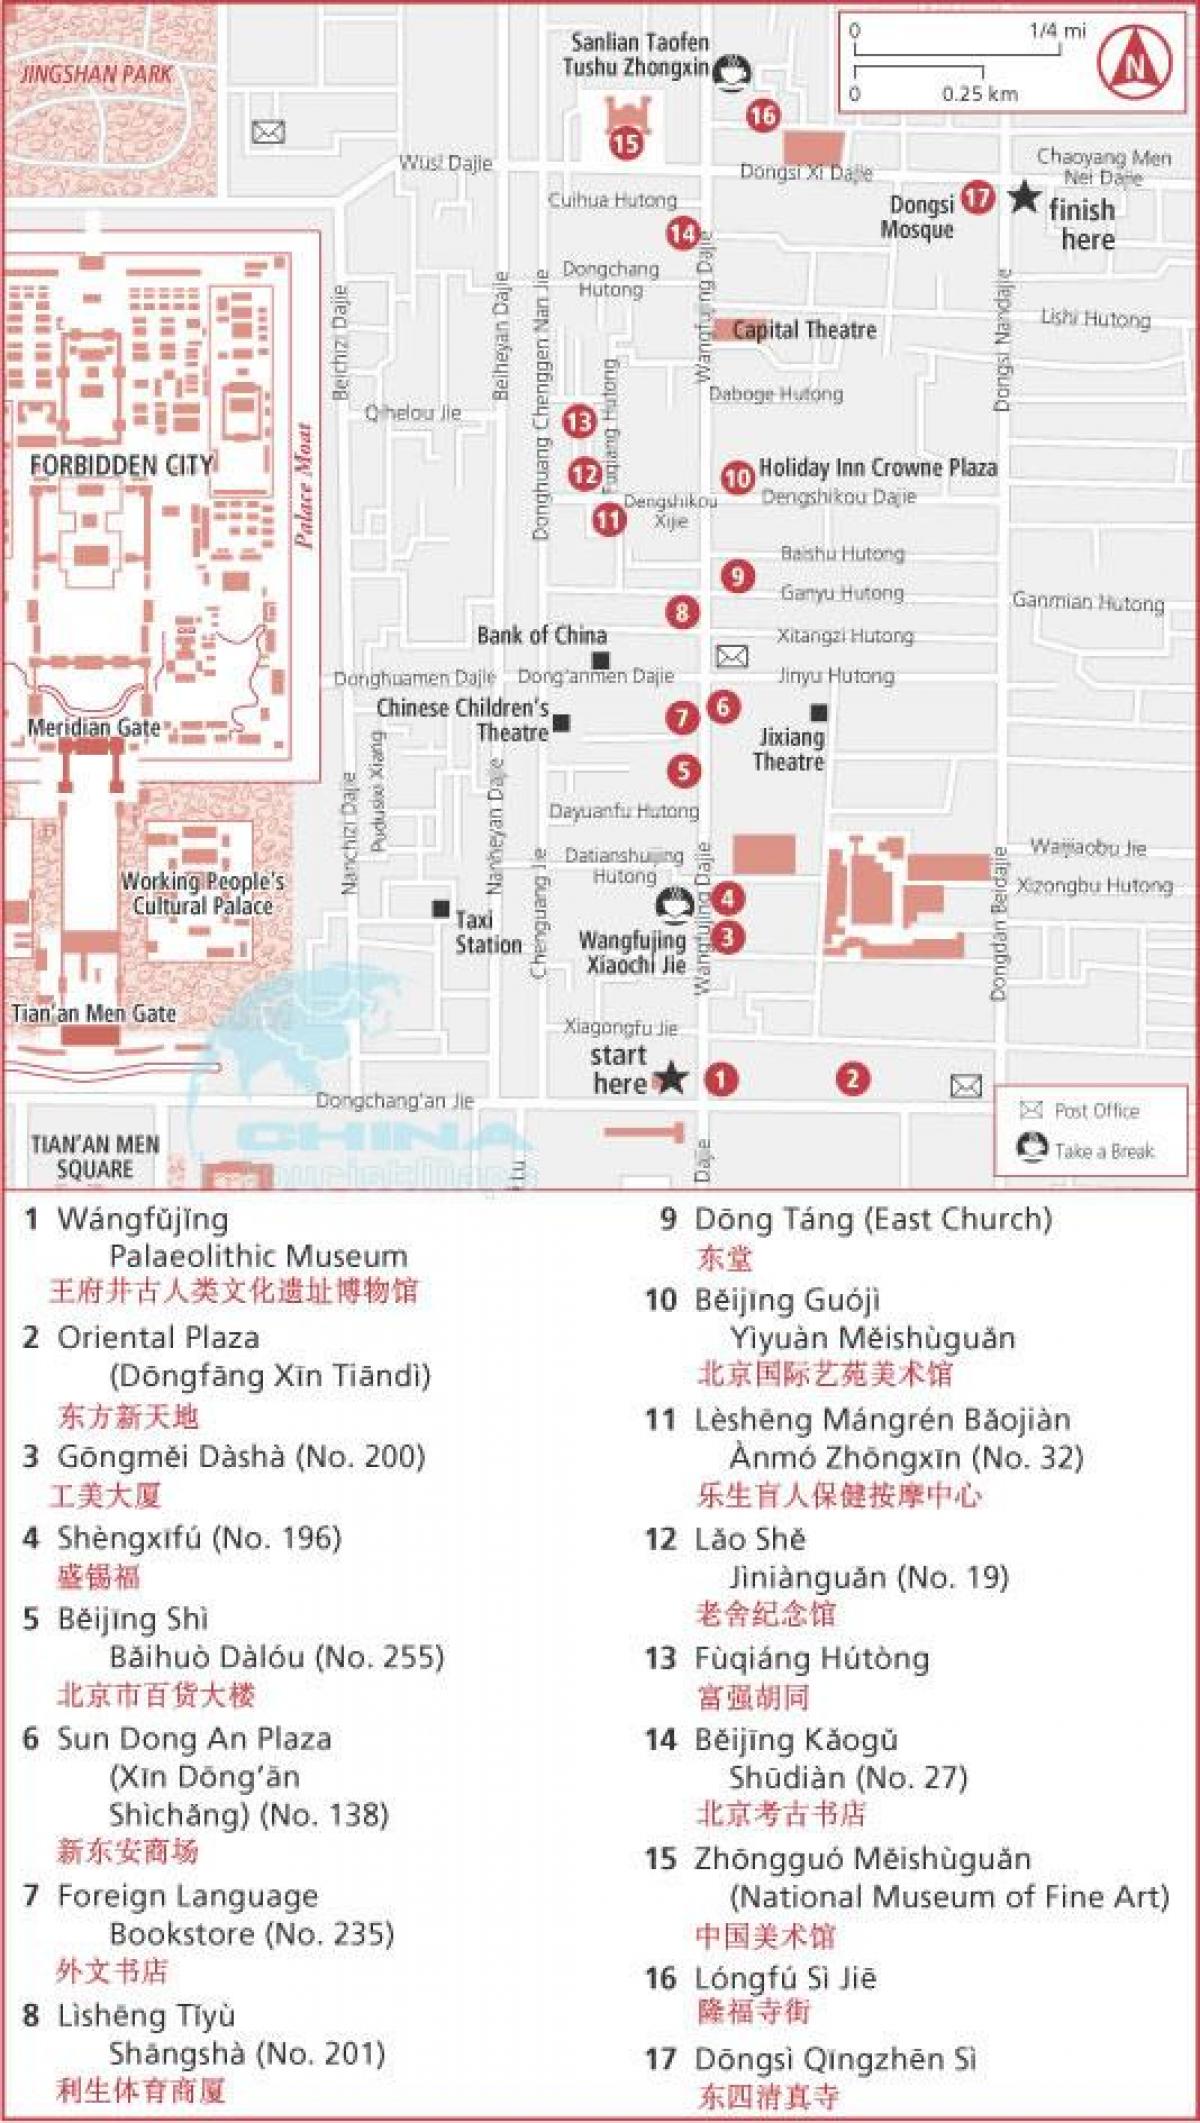 wangfujing ქუჩის რუკა